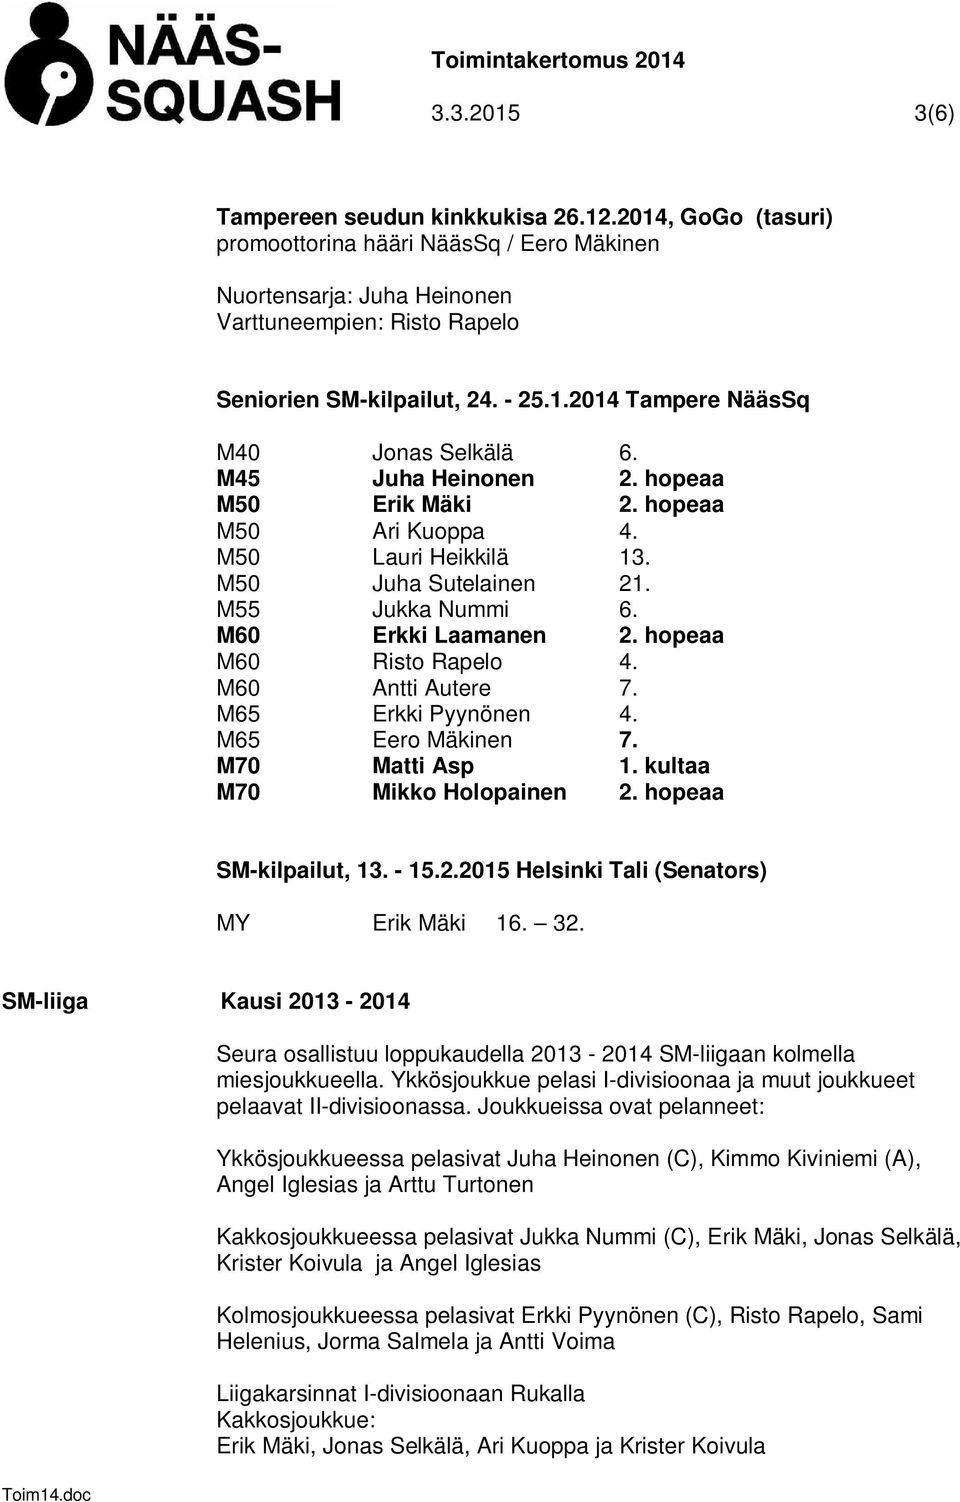 hopeaa M60 Risto Rapelo 4. M60 Antti Autere 7. M65 Erkki Pyynönen 4. M65 Eero Mäkinen 7. M70 Matti Asp 1. kultaa M70 Mikko Holopainen 2. hopeaa SM-kilpailut, 13. - 15.2.2015 Helsinki Tali (Senators) MY Erik Mäki 16.